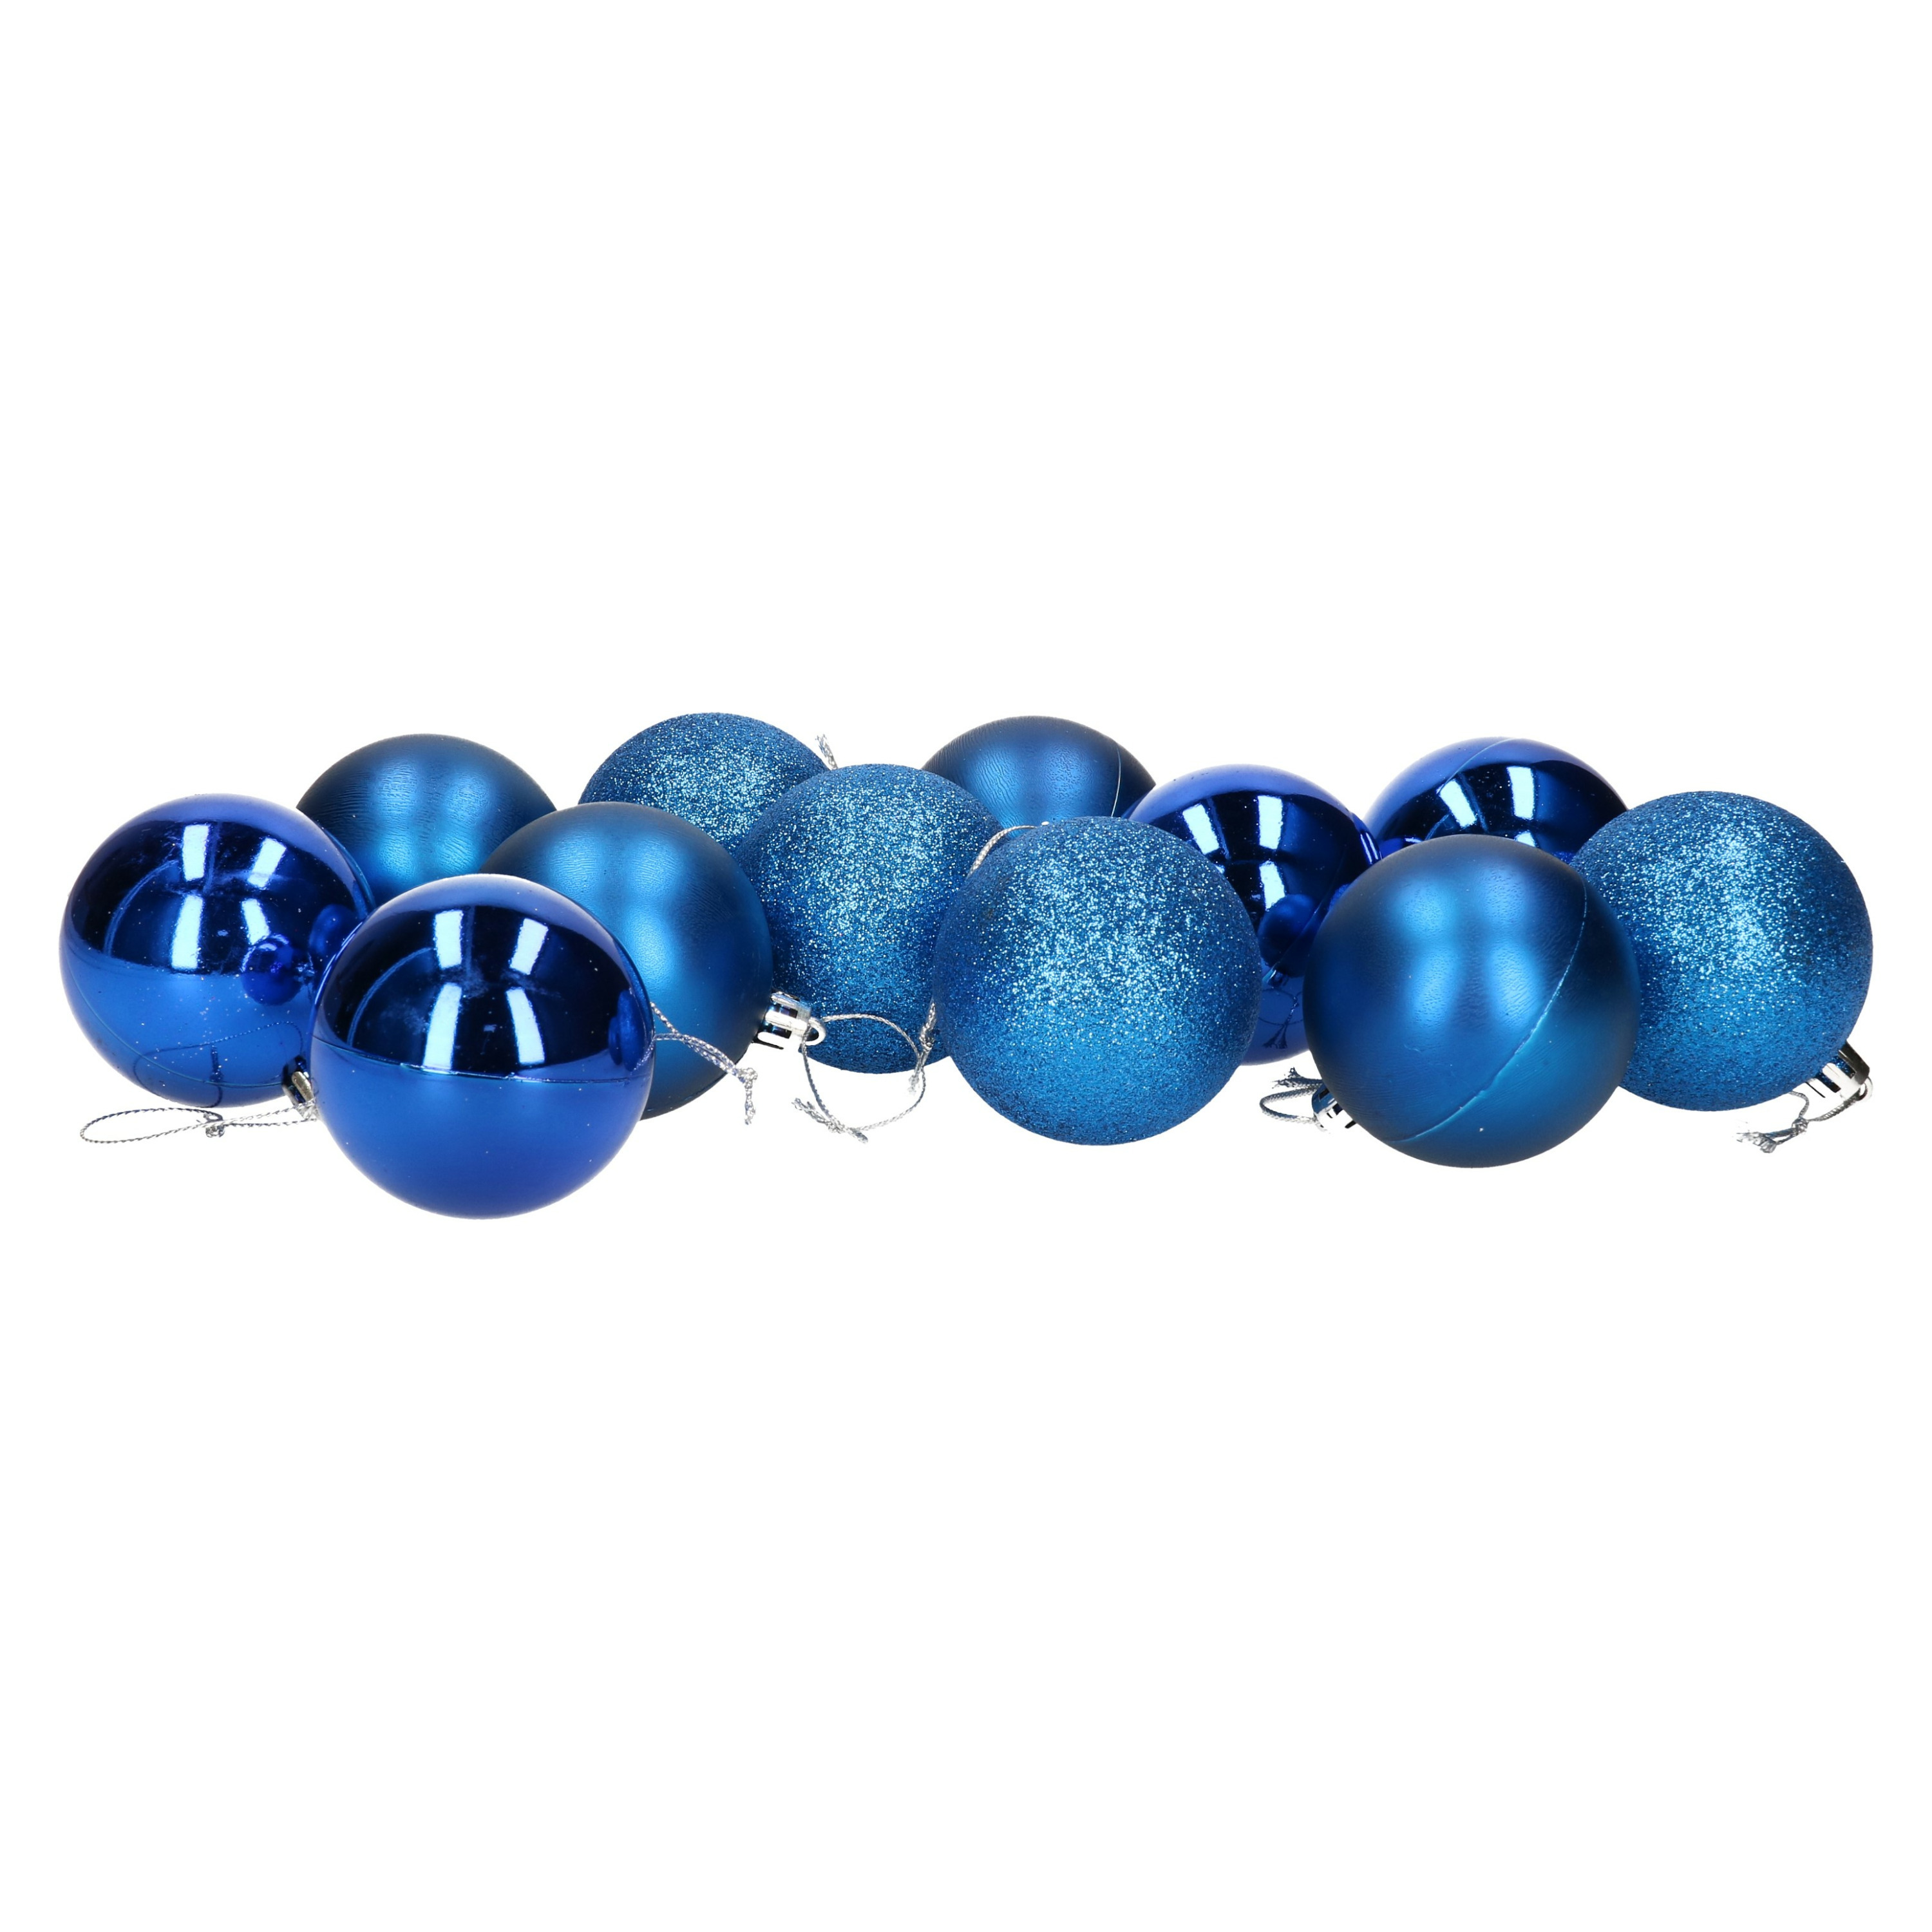 12x stuks kerstballen blauw mix van mat-glans-glitter kunststof 6 cm